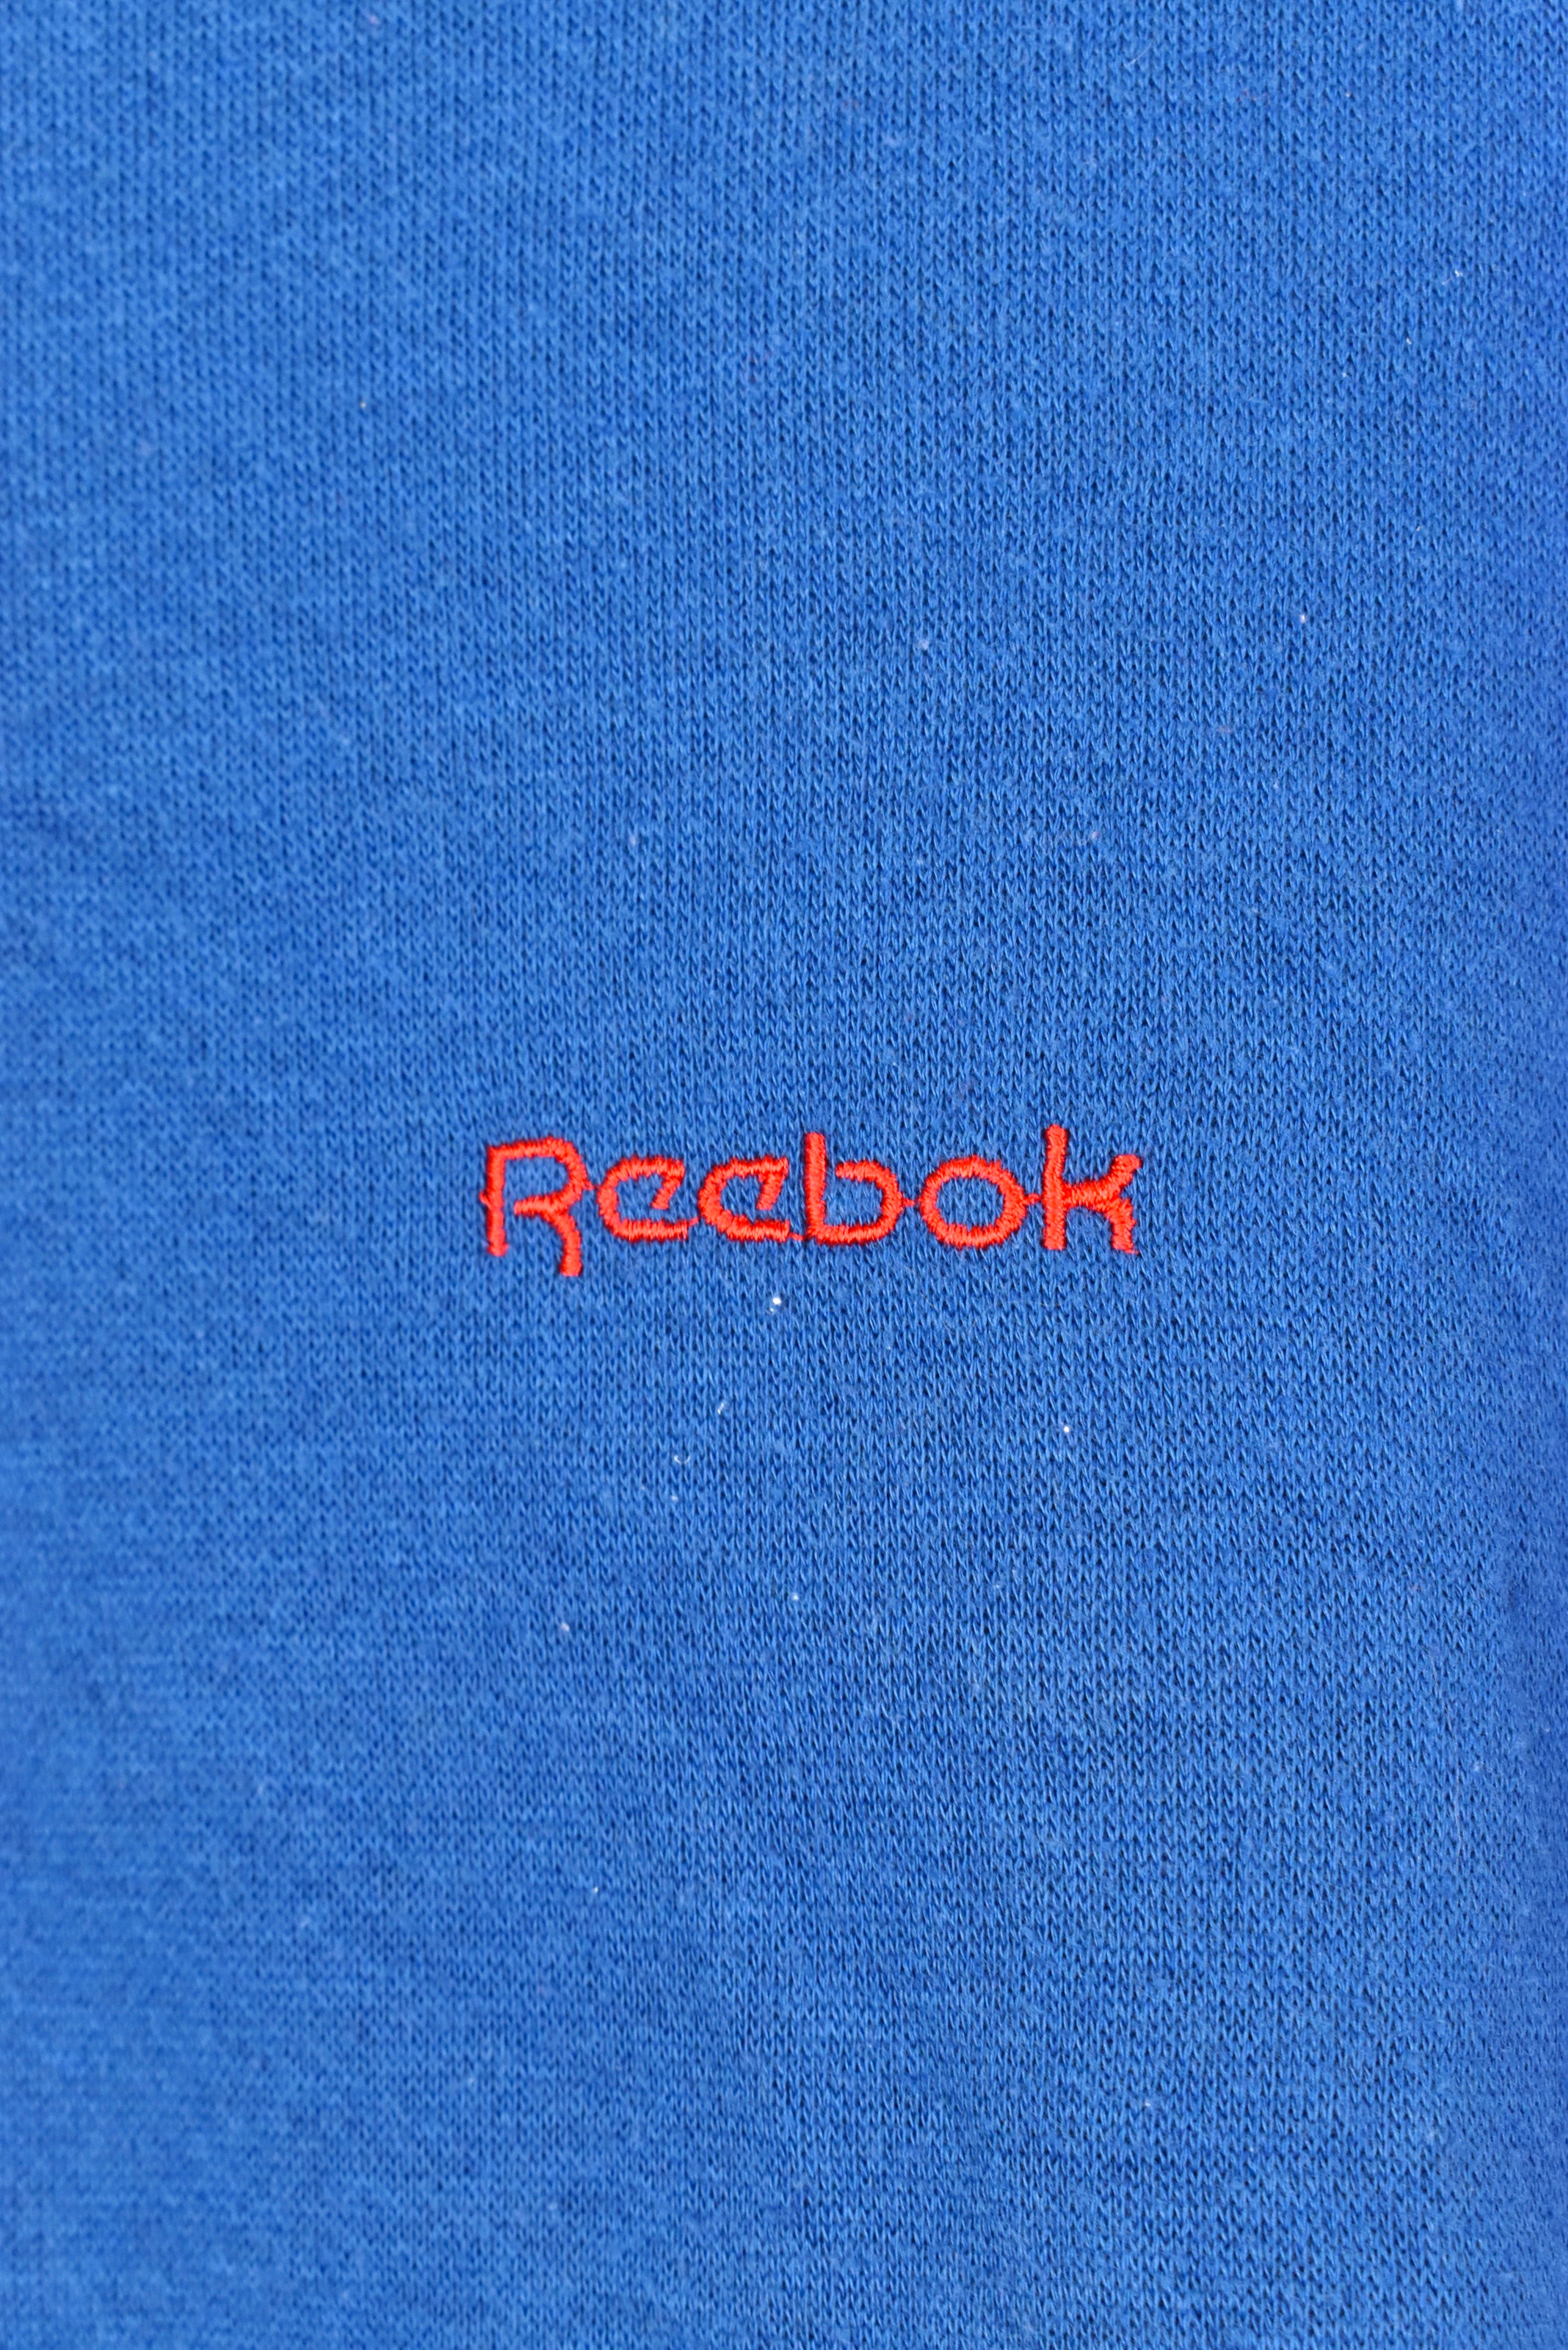 Vintage Reebok bomber jacket, blue embroidered sweatshirt - AU XXL REEBOK